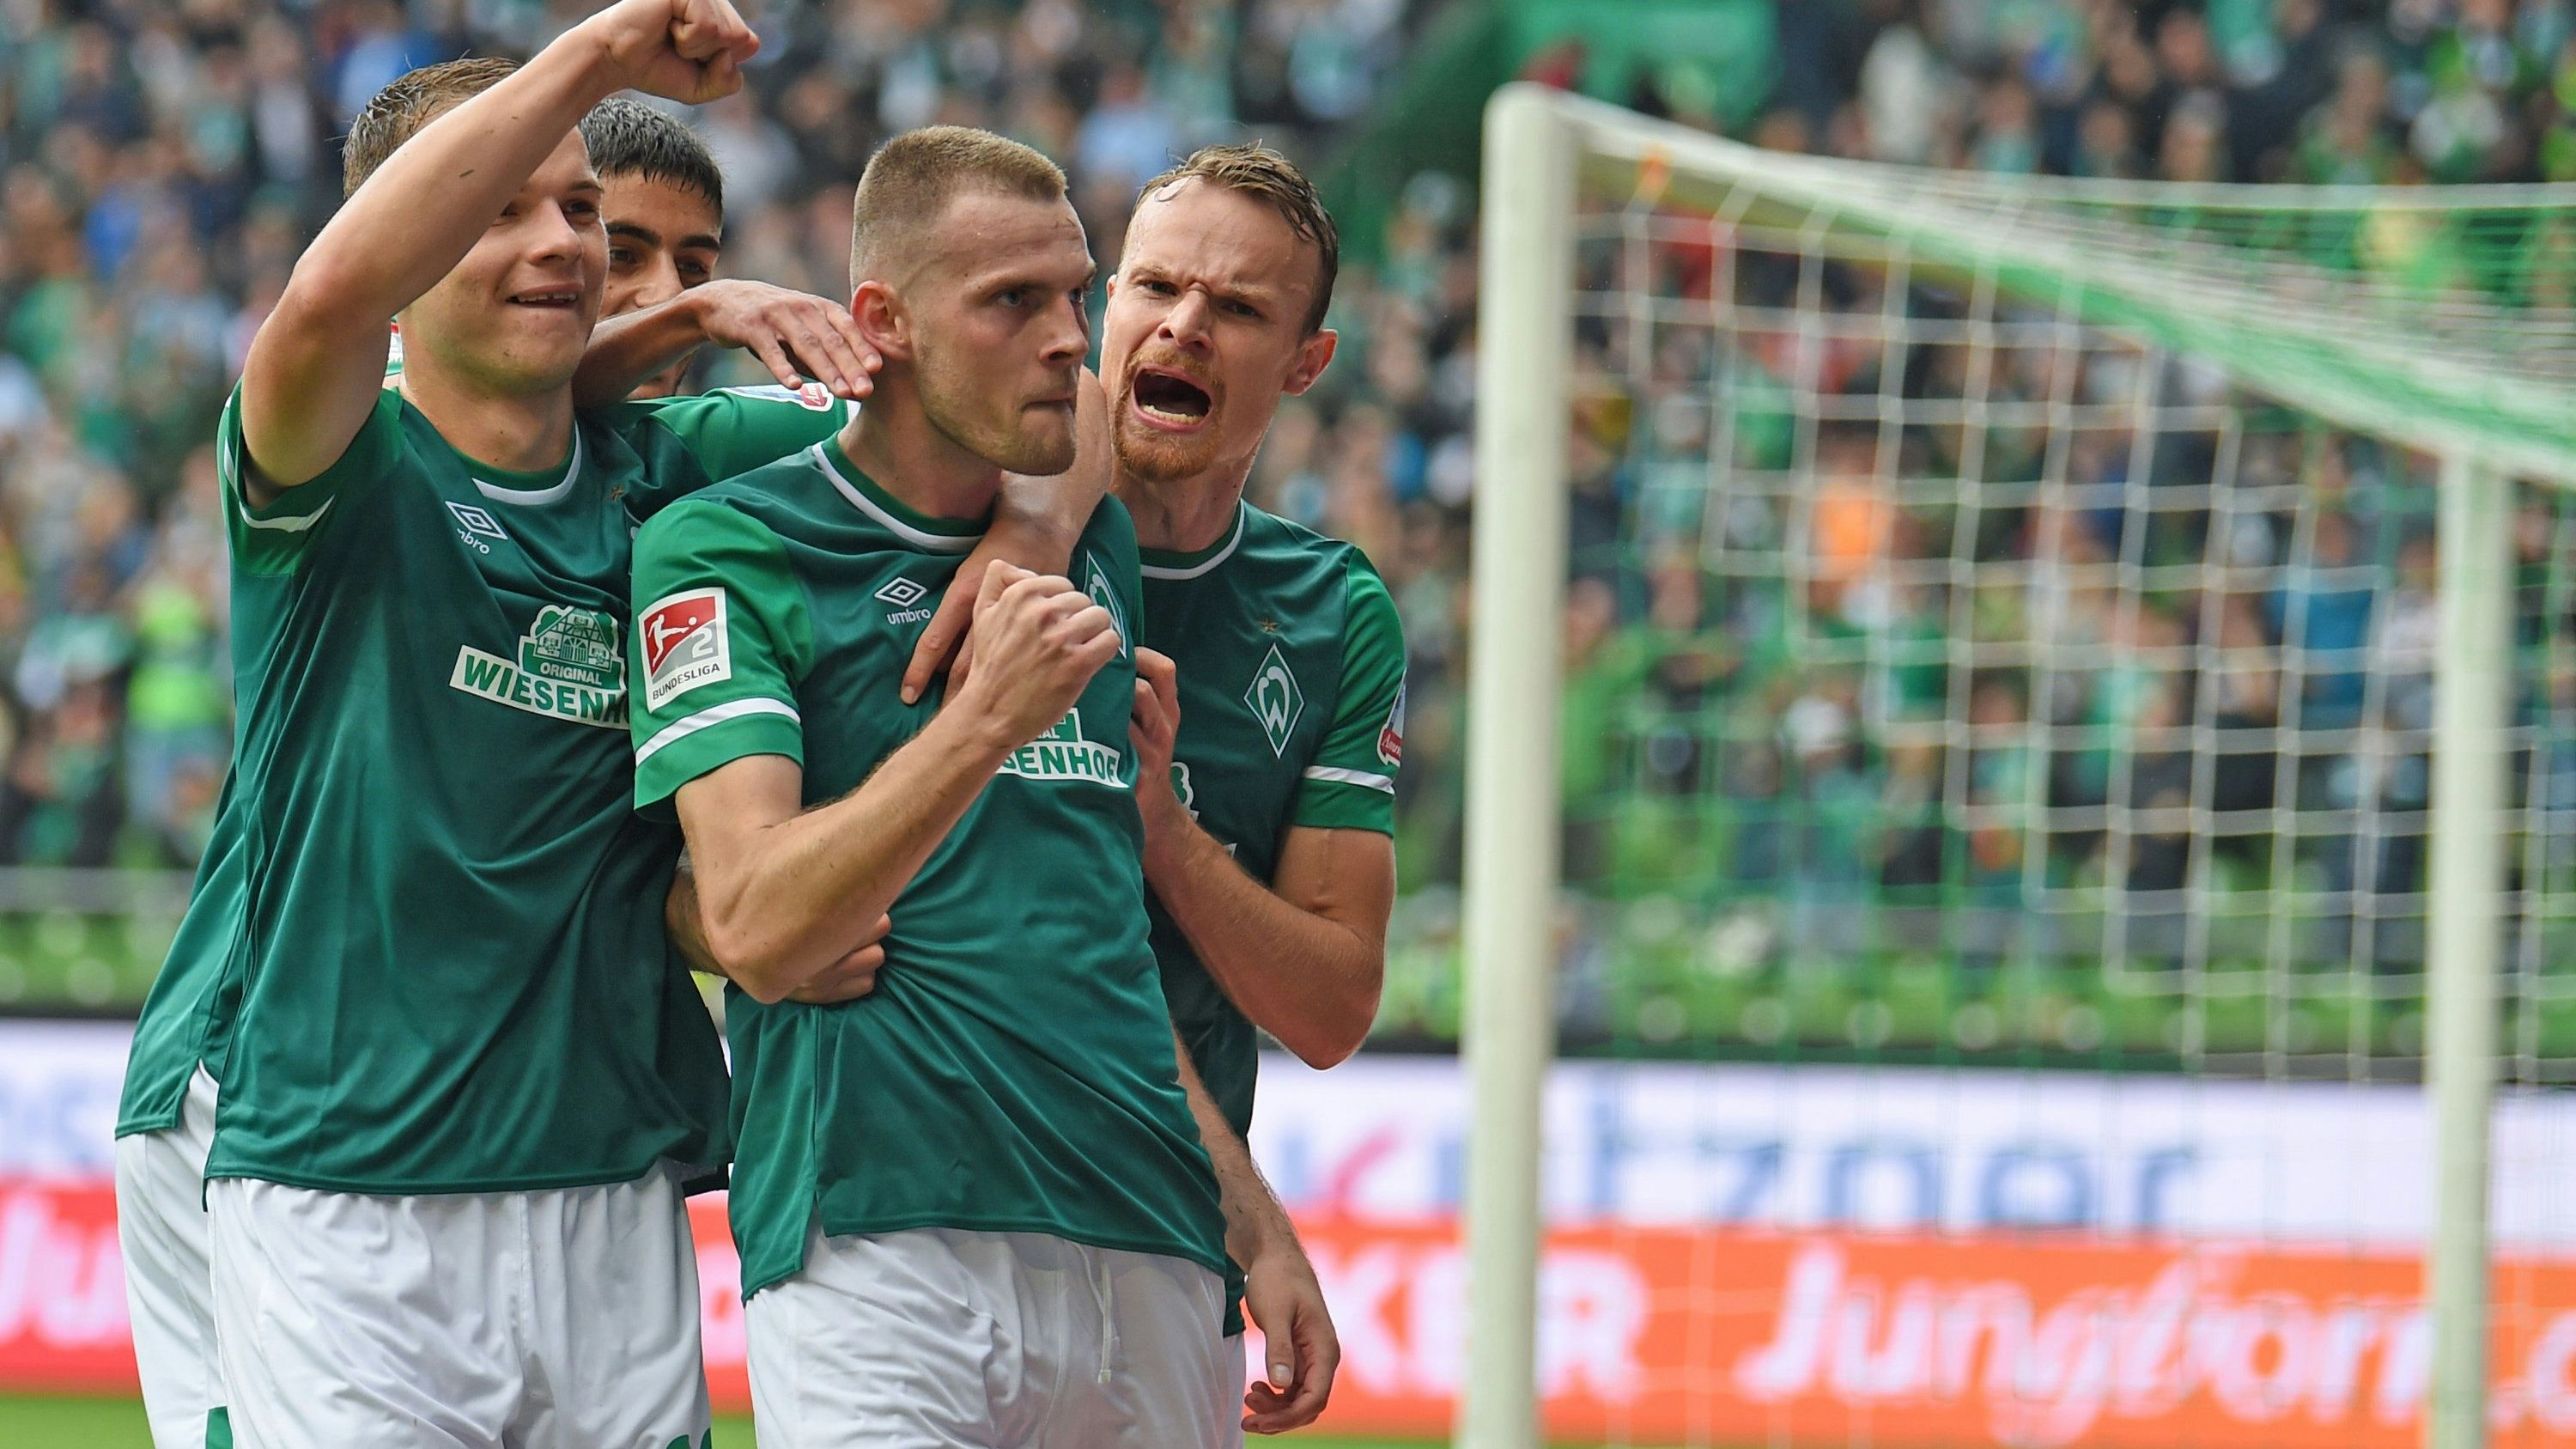 Freude in Bremen: Eine Jubelszene vom 3:0-Sieg gegen Hansa Rostock. Foto: dpa/Jaspersen